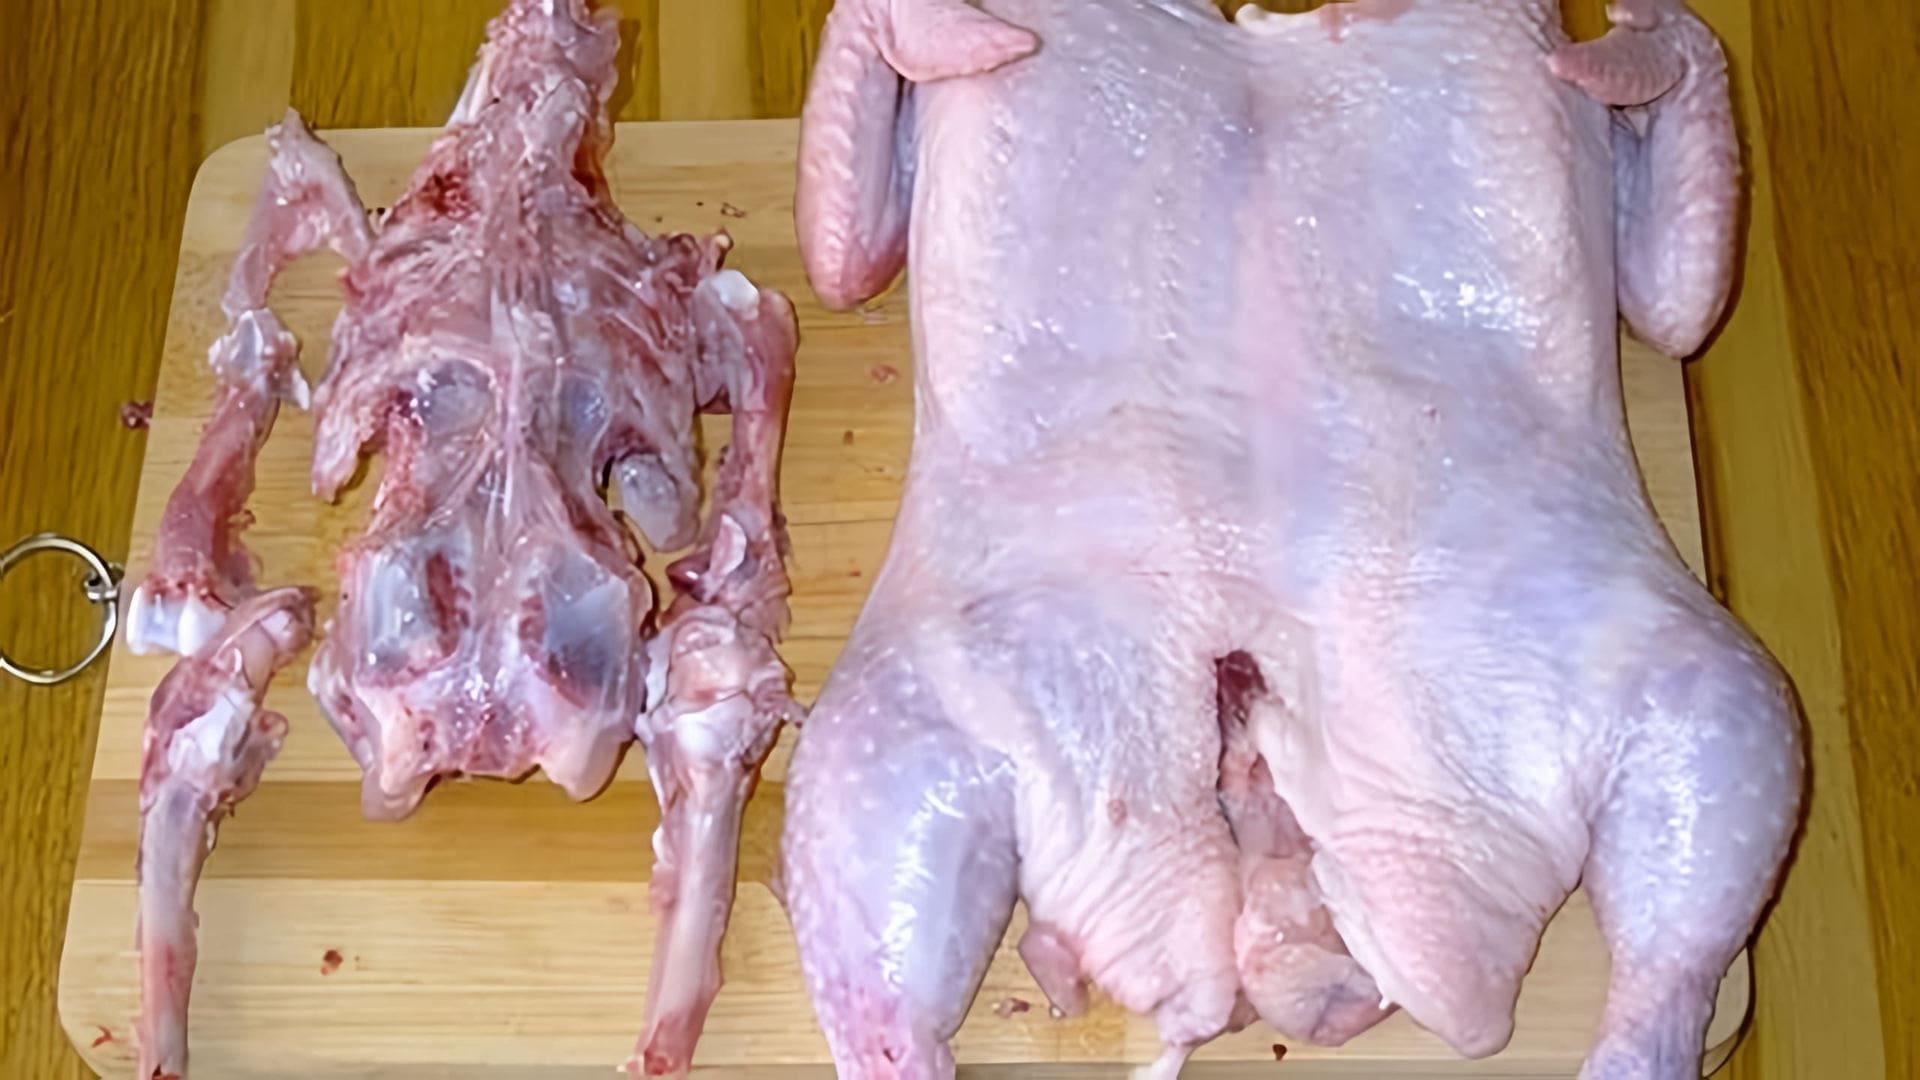 В данном видео демонстрируется процесс разделывания курицы для приготовления праздничного куриного рулета или фарширования курицы